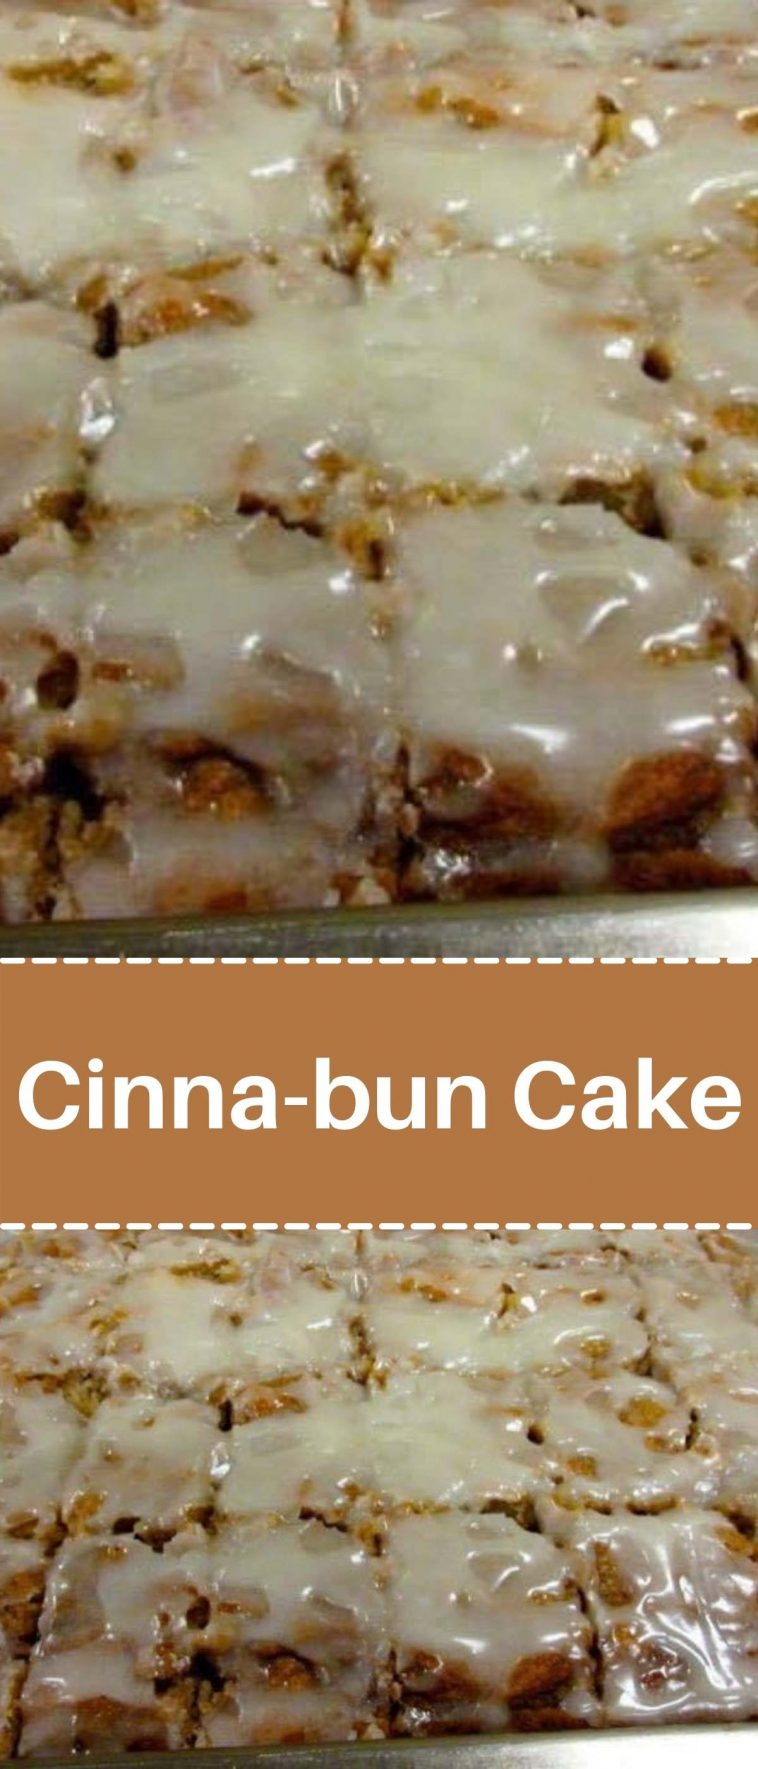 Cinna-bun Cake